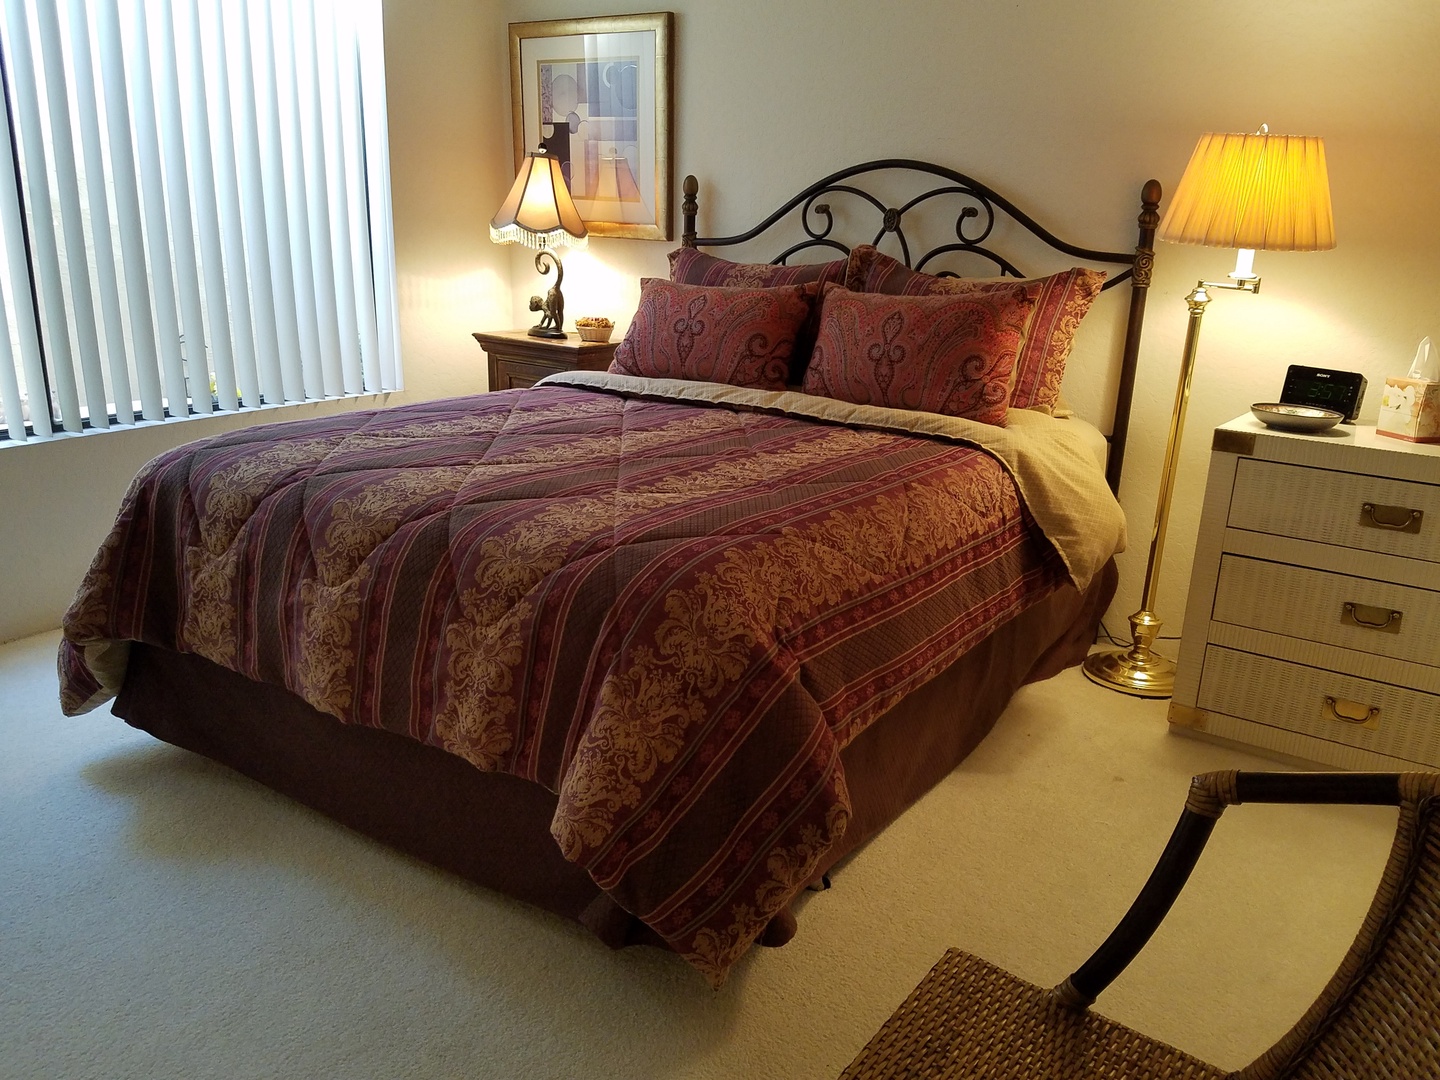 Guest Bedroom with Queen Bed